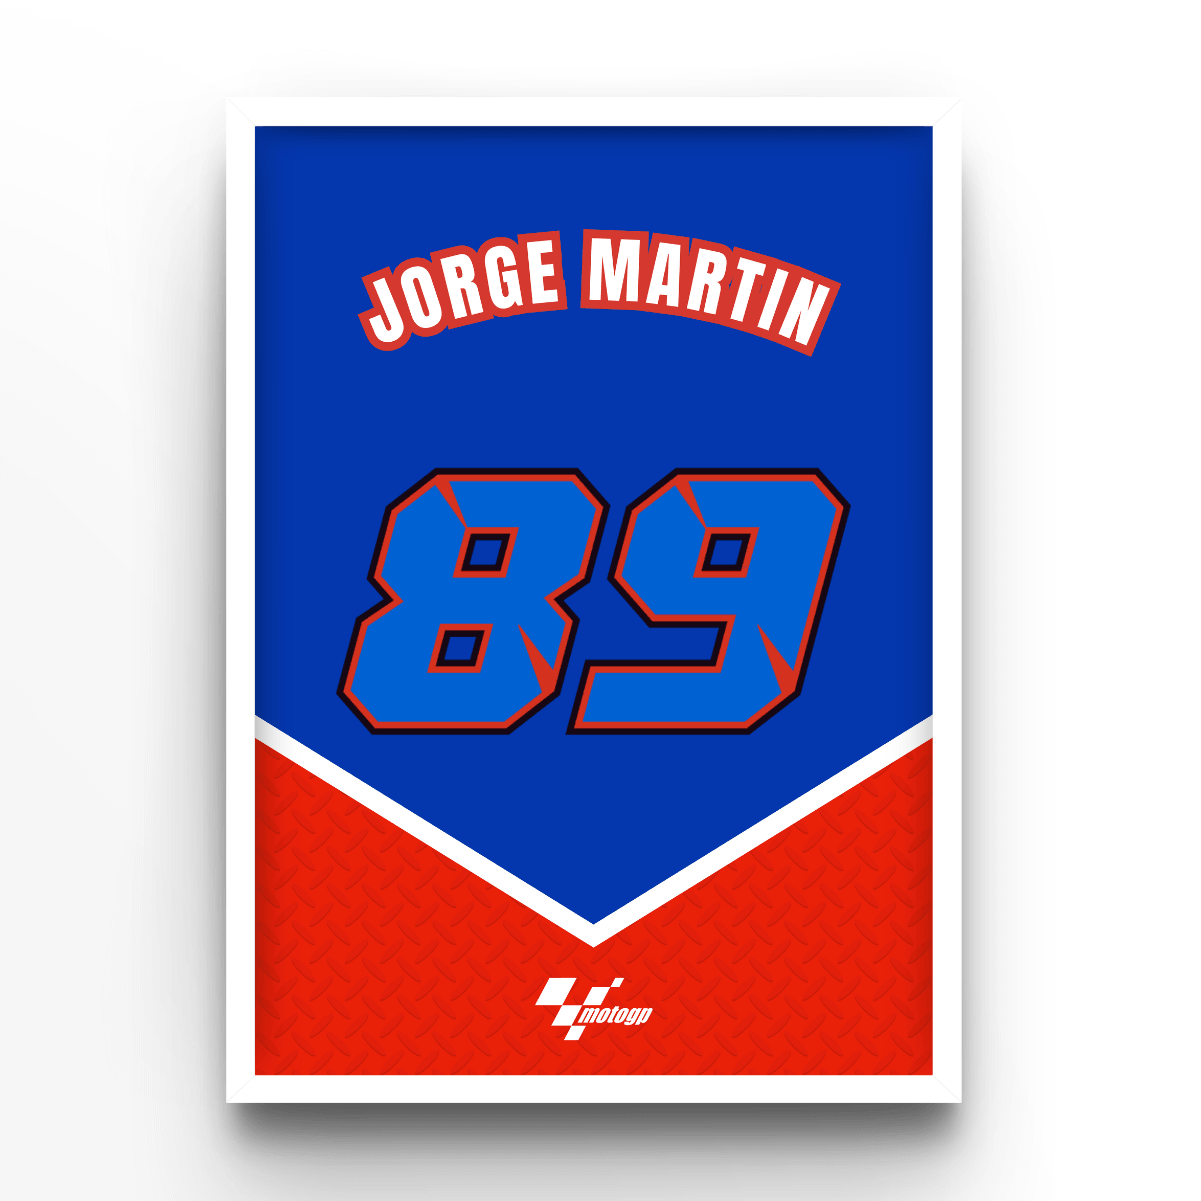 Jorge Martin - A4, A3, A2 Posters Base - Poster Print Shop / Art Prints / PostersBase